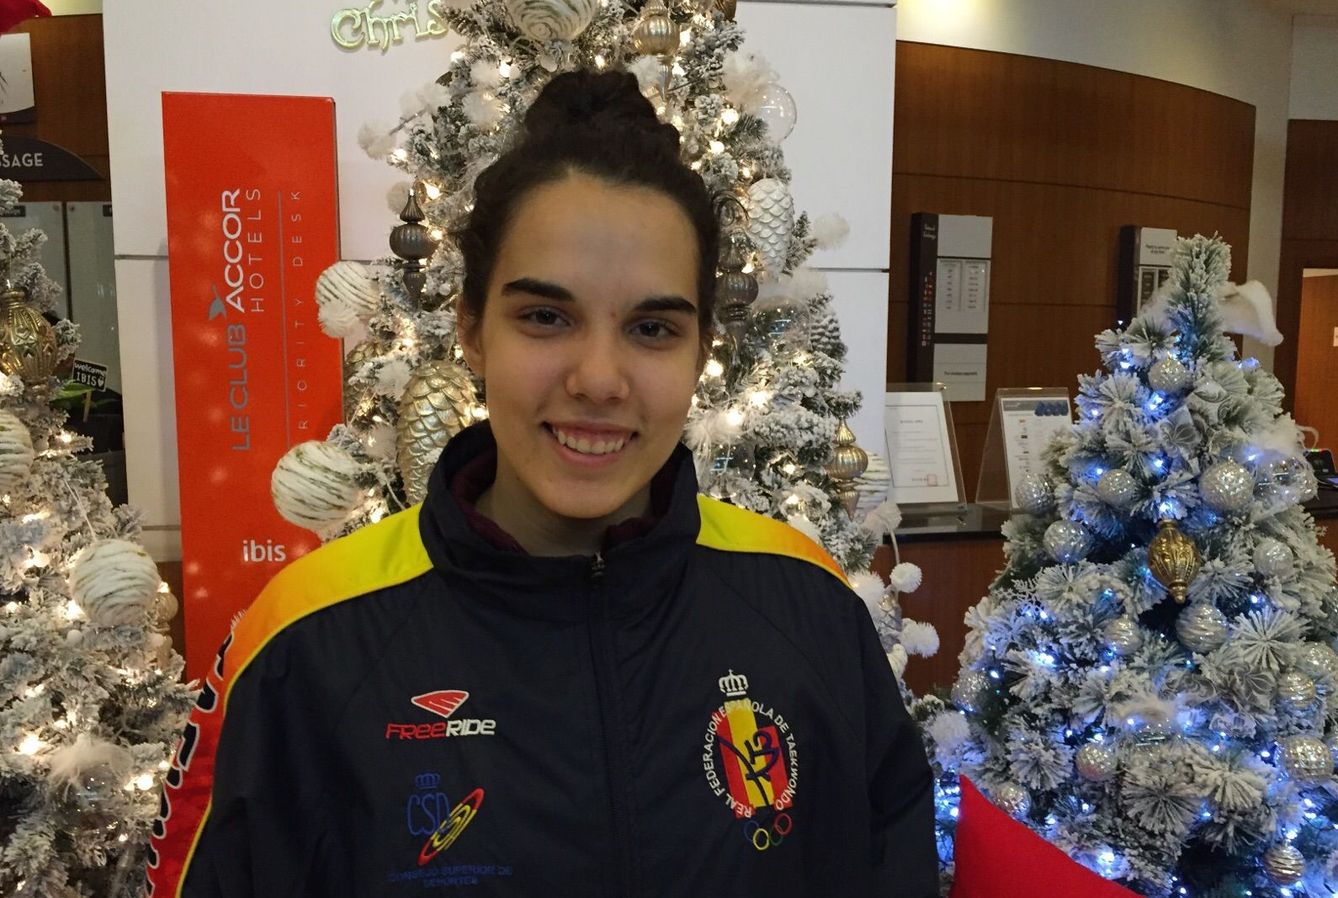 El gran deseo de Marta Calvo para 2016 es triunfar en los Juegos Olímpicos (Subetudeporte)